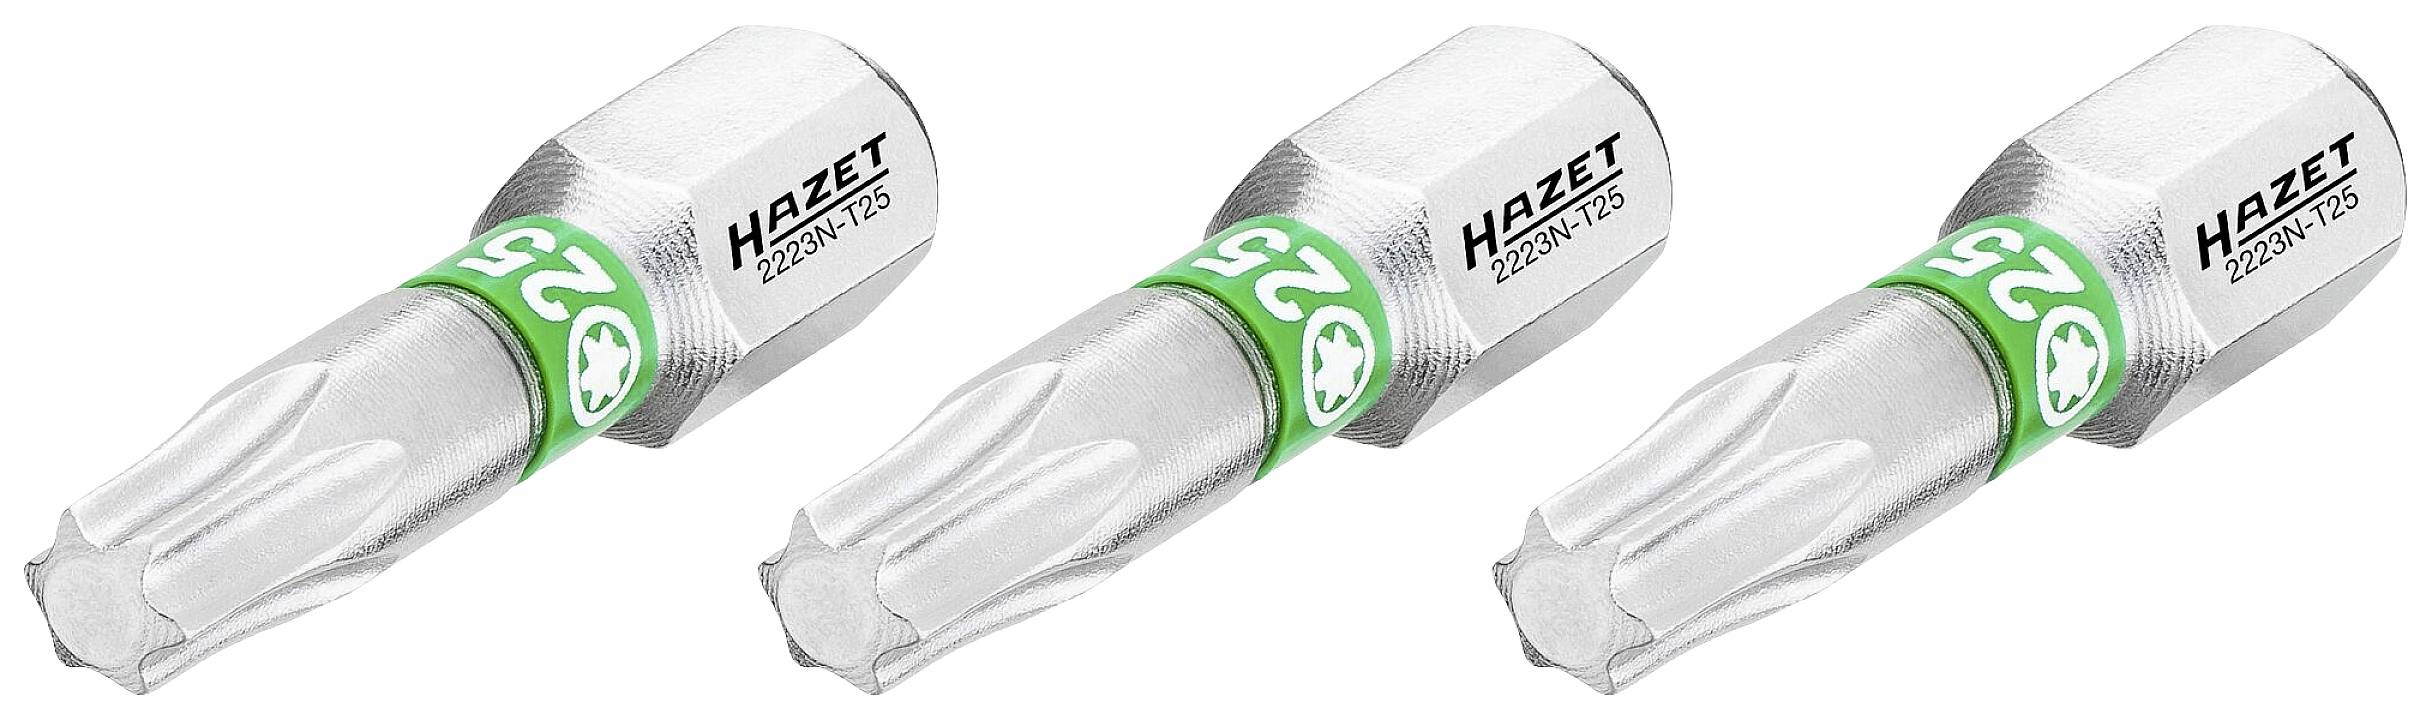 HAZET 2223N-T25/3 2223N-T25/3 TX-Bit T 25 C 6.3 1 St.